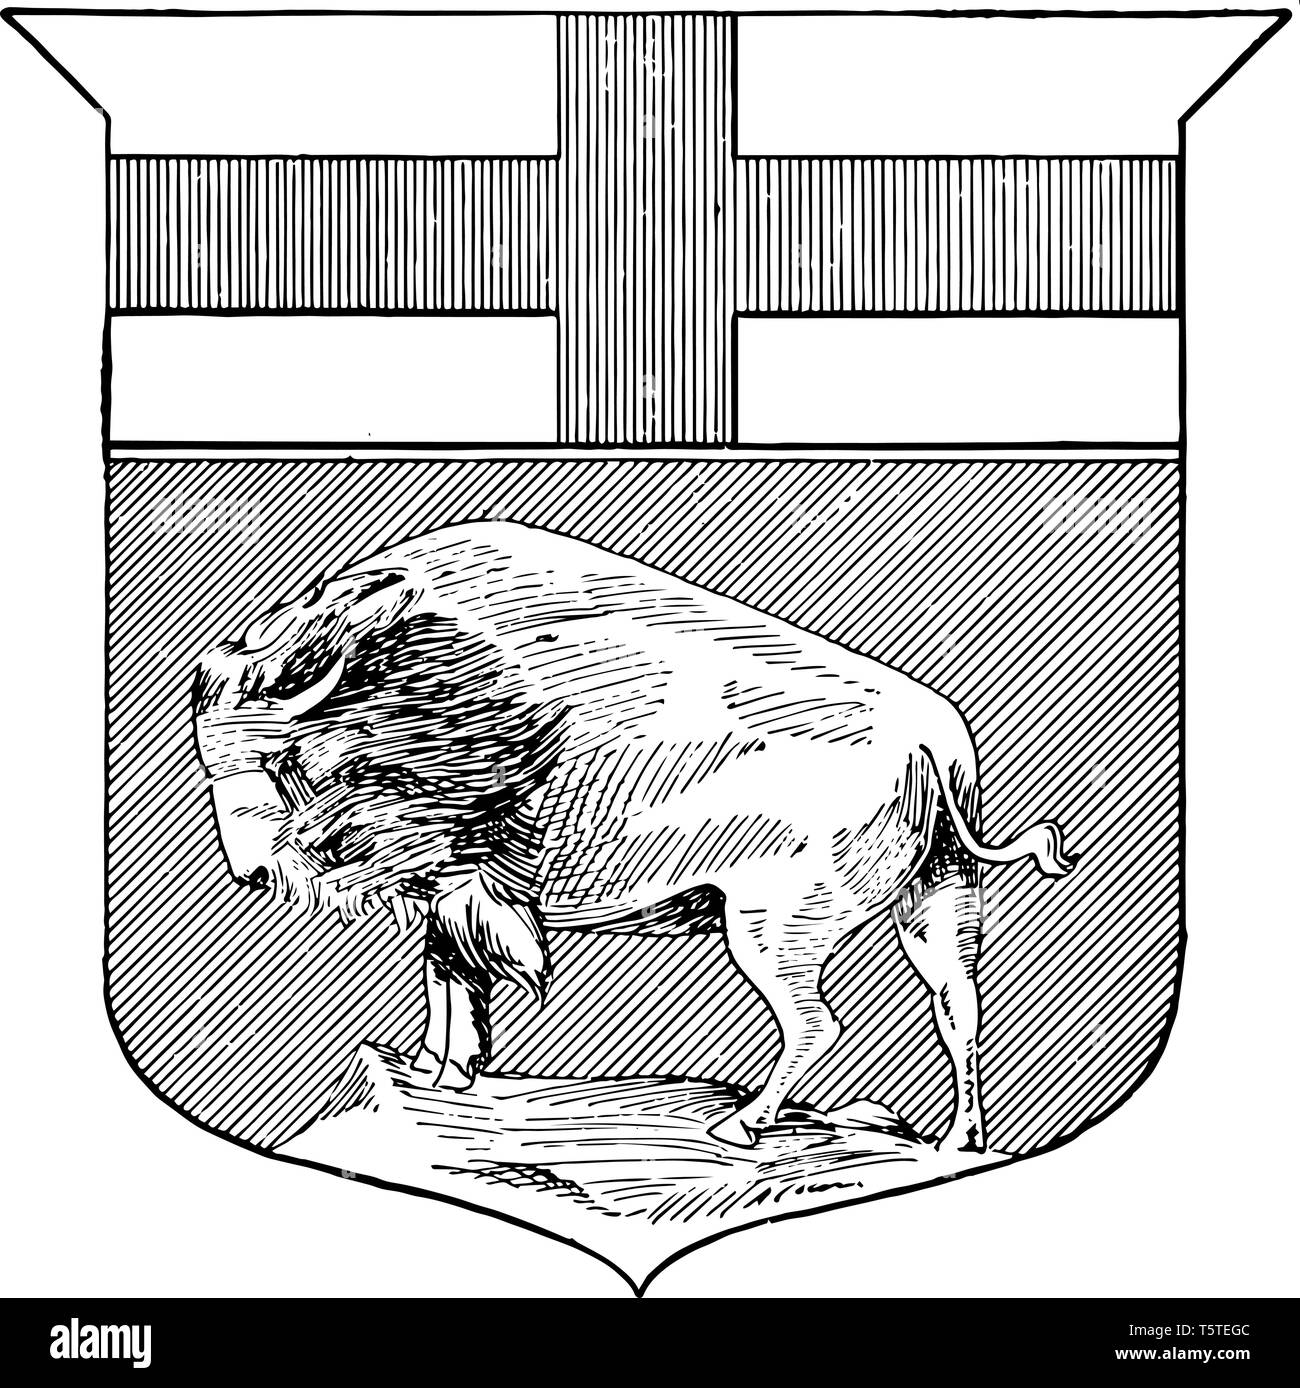 Segno più lungo con bison in cappotto maqnitoba vintage disegno della linea. Illustrazione Vettoriale